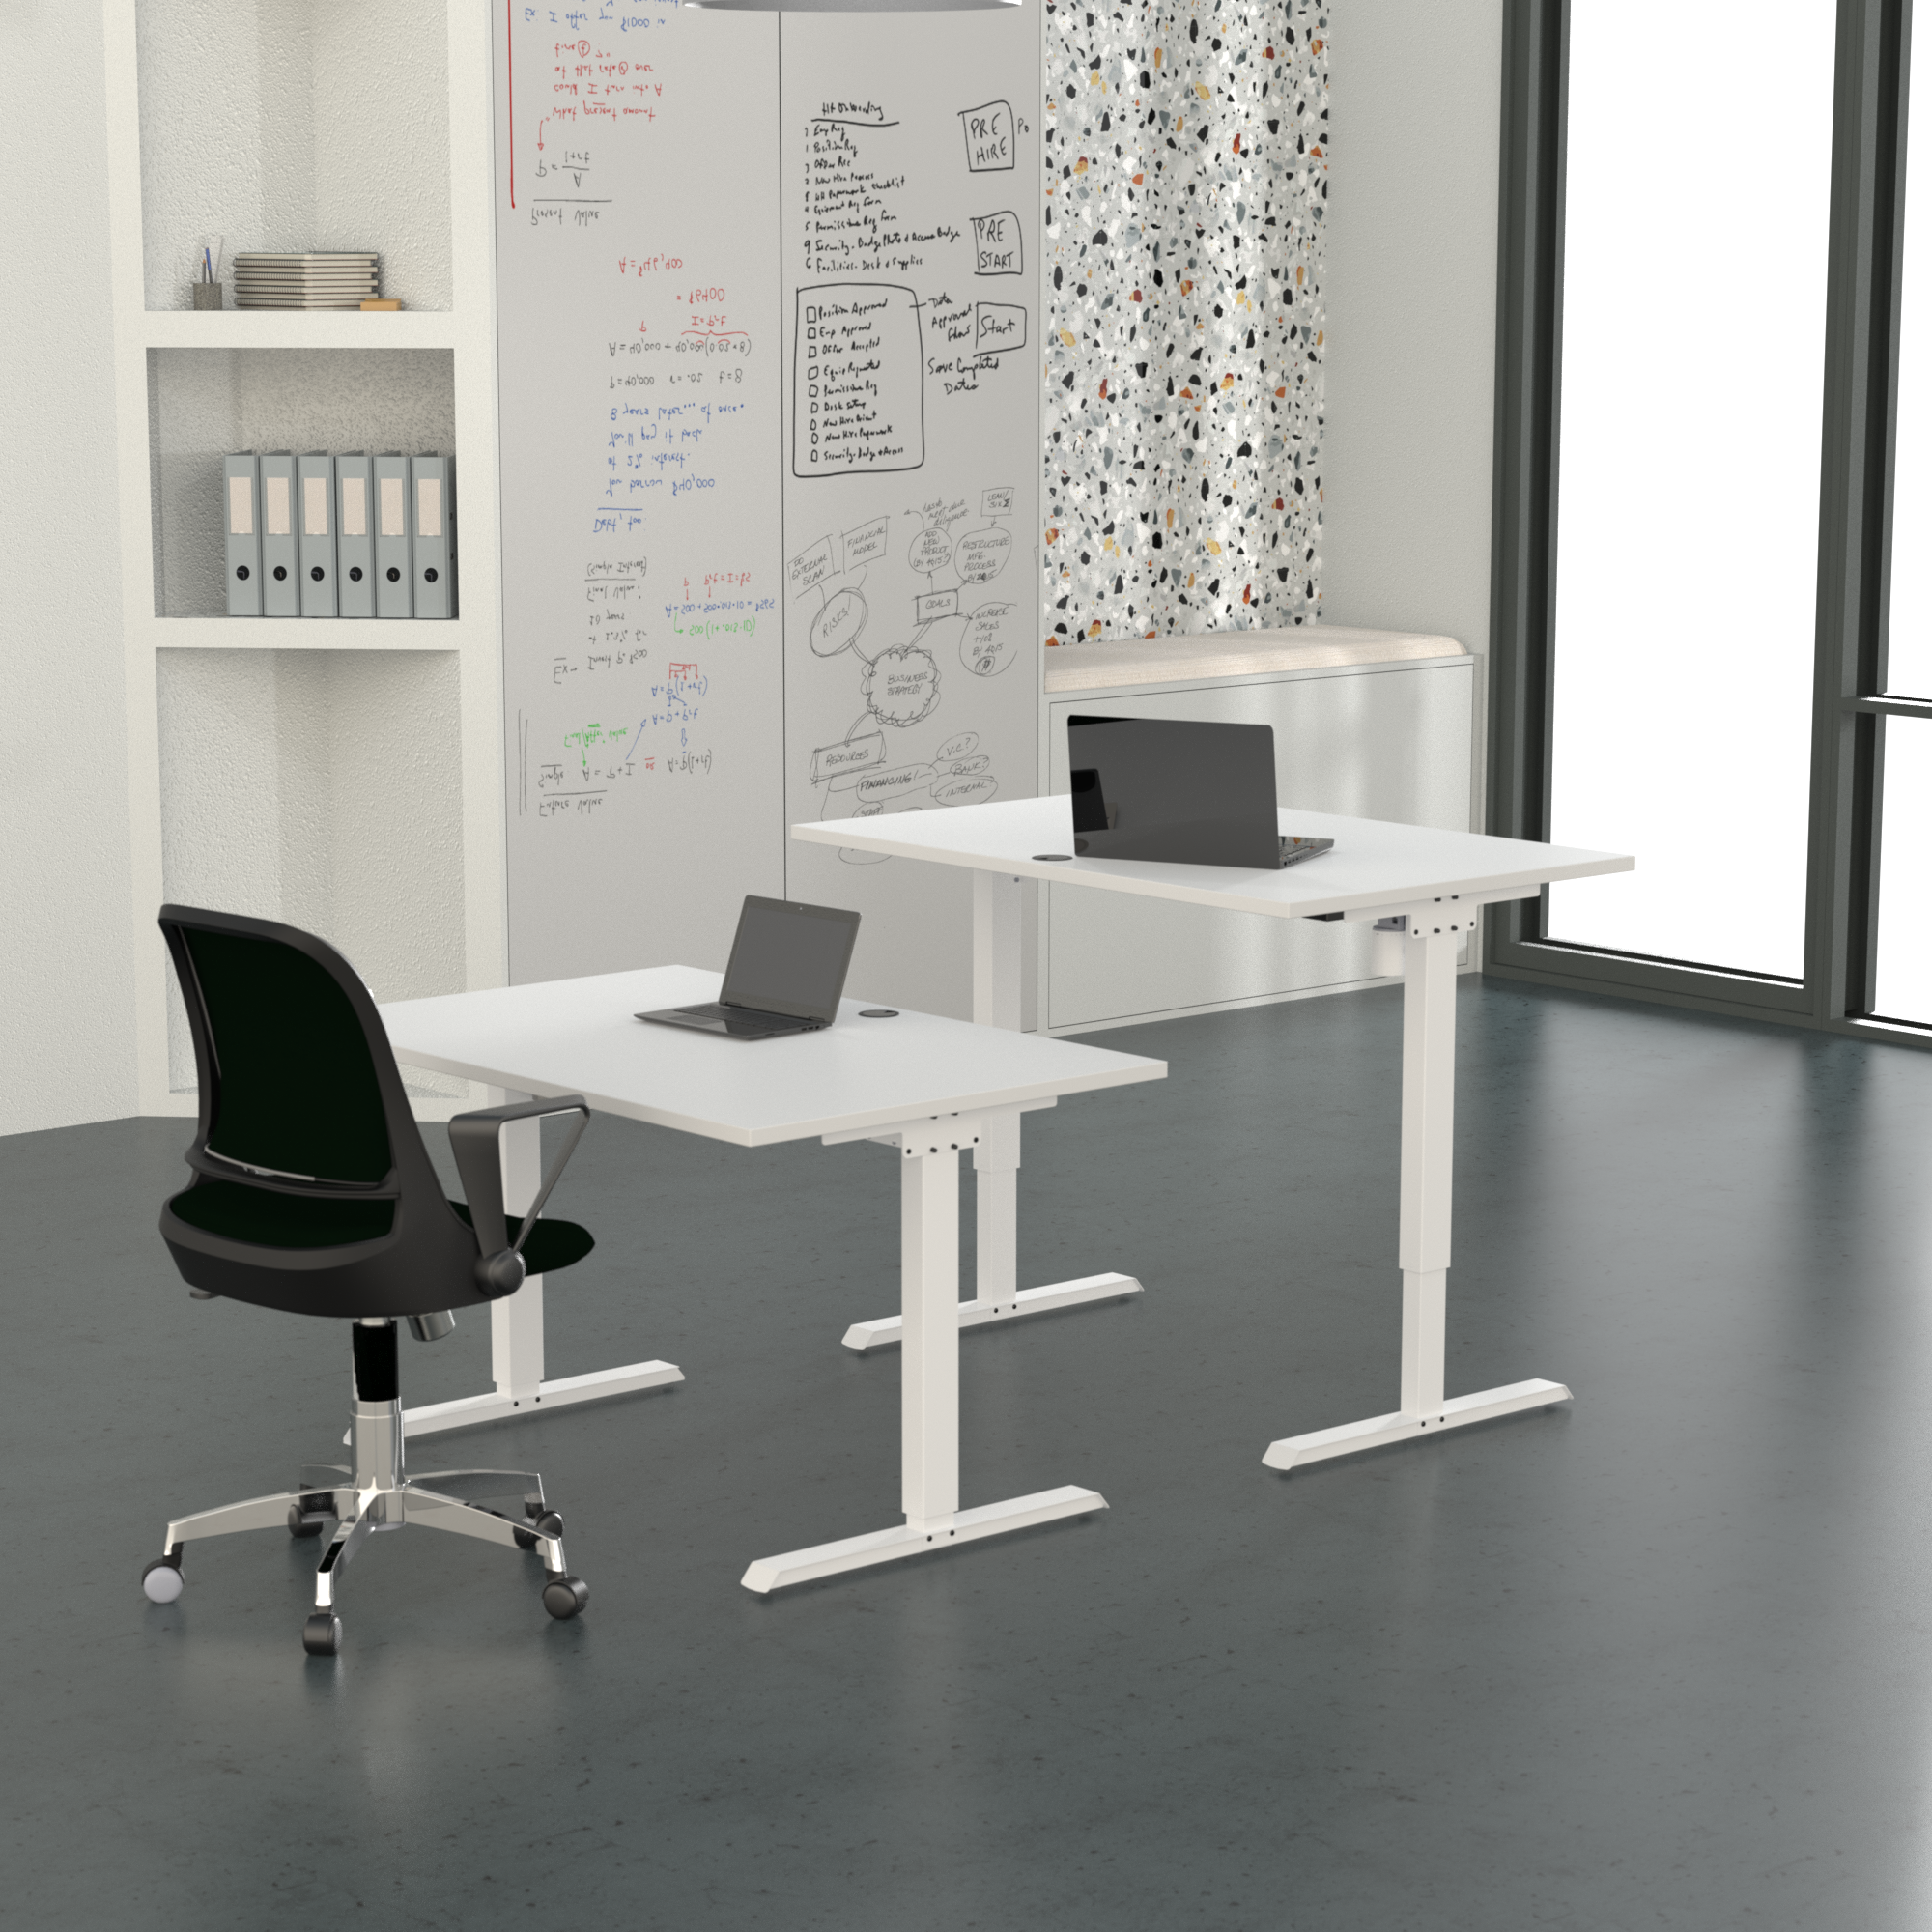 Schreibtisch steh/sitz | 180x80 cm | Weiß mit weißem Gestell